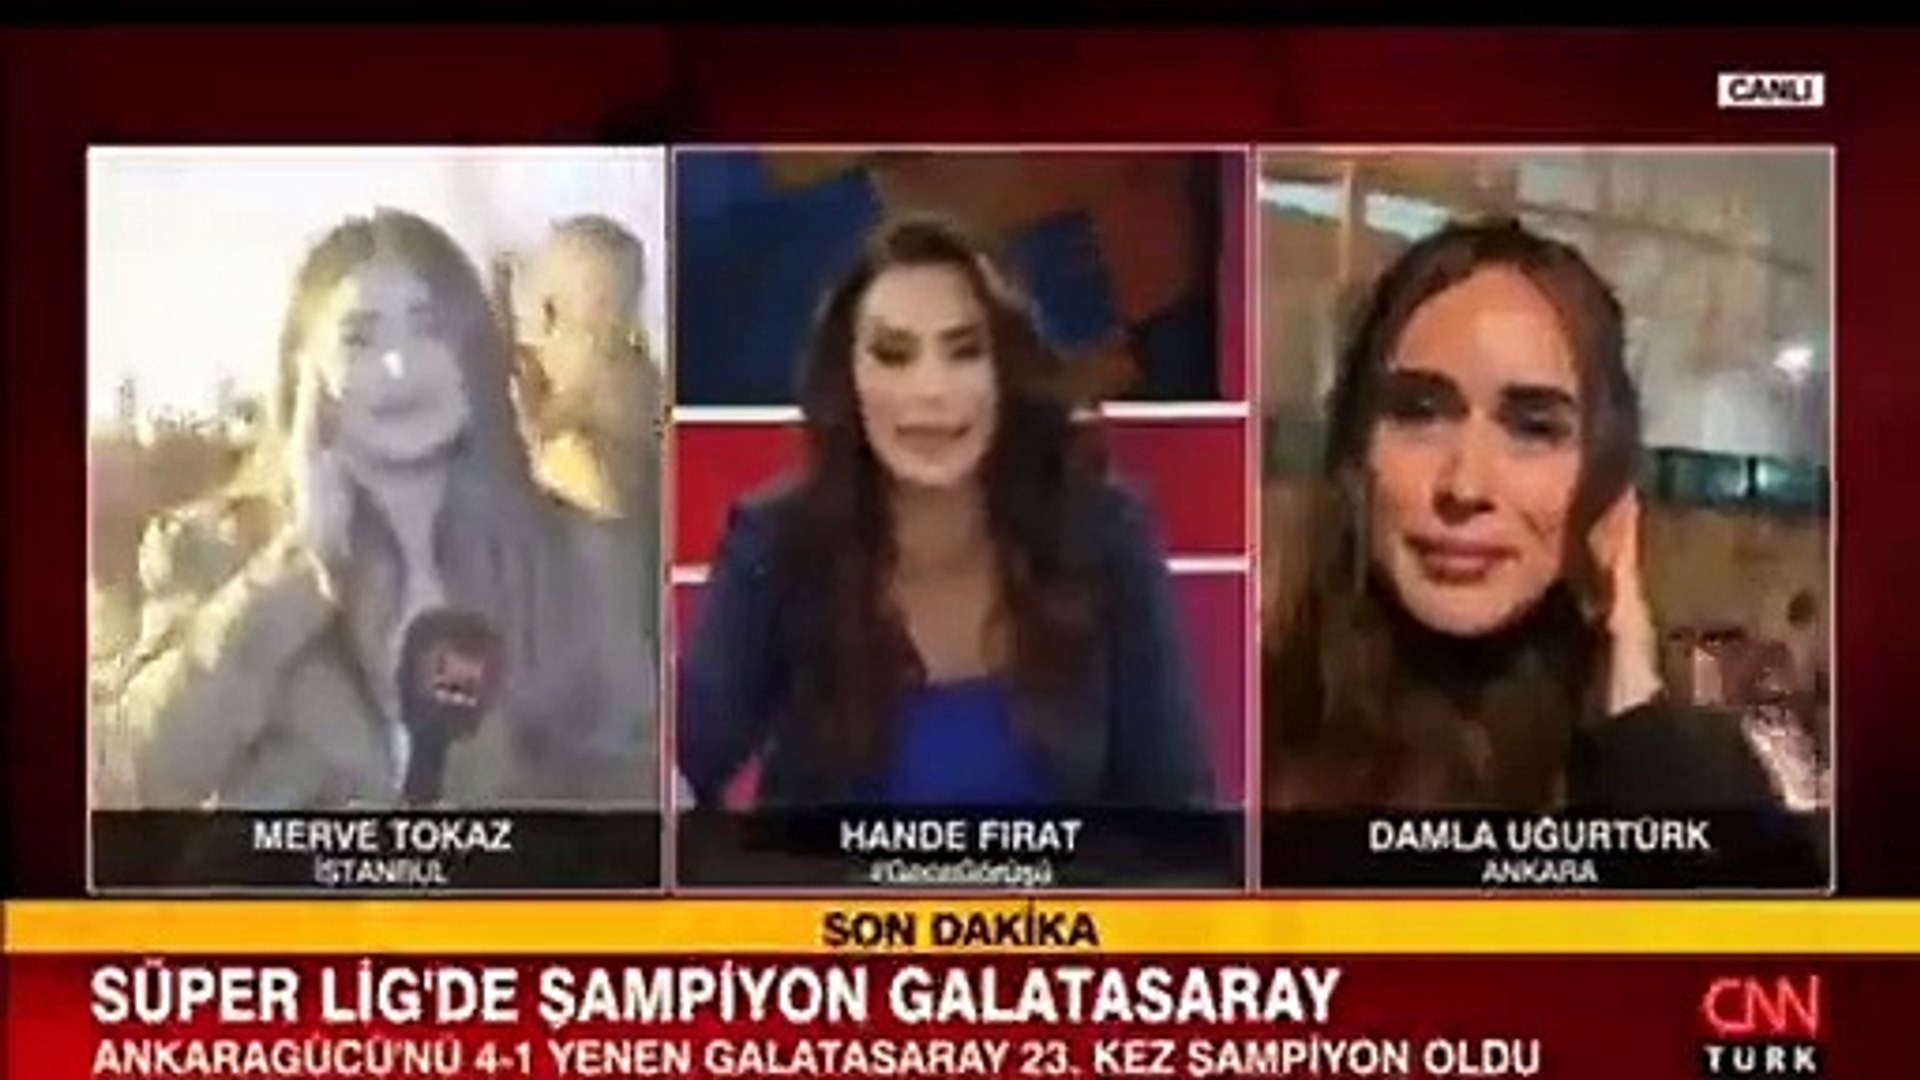 CNN Türk'te küfürlü tezahürat şoku! Hande Fırat'ın zor anları